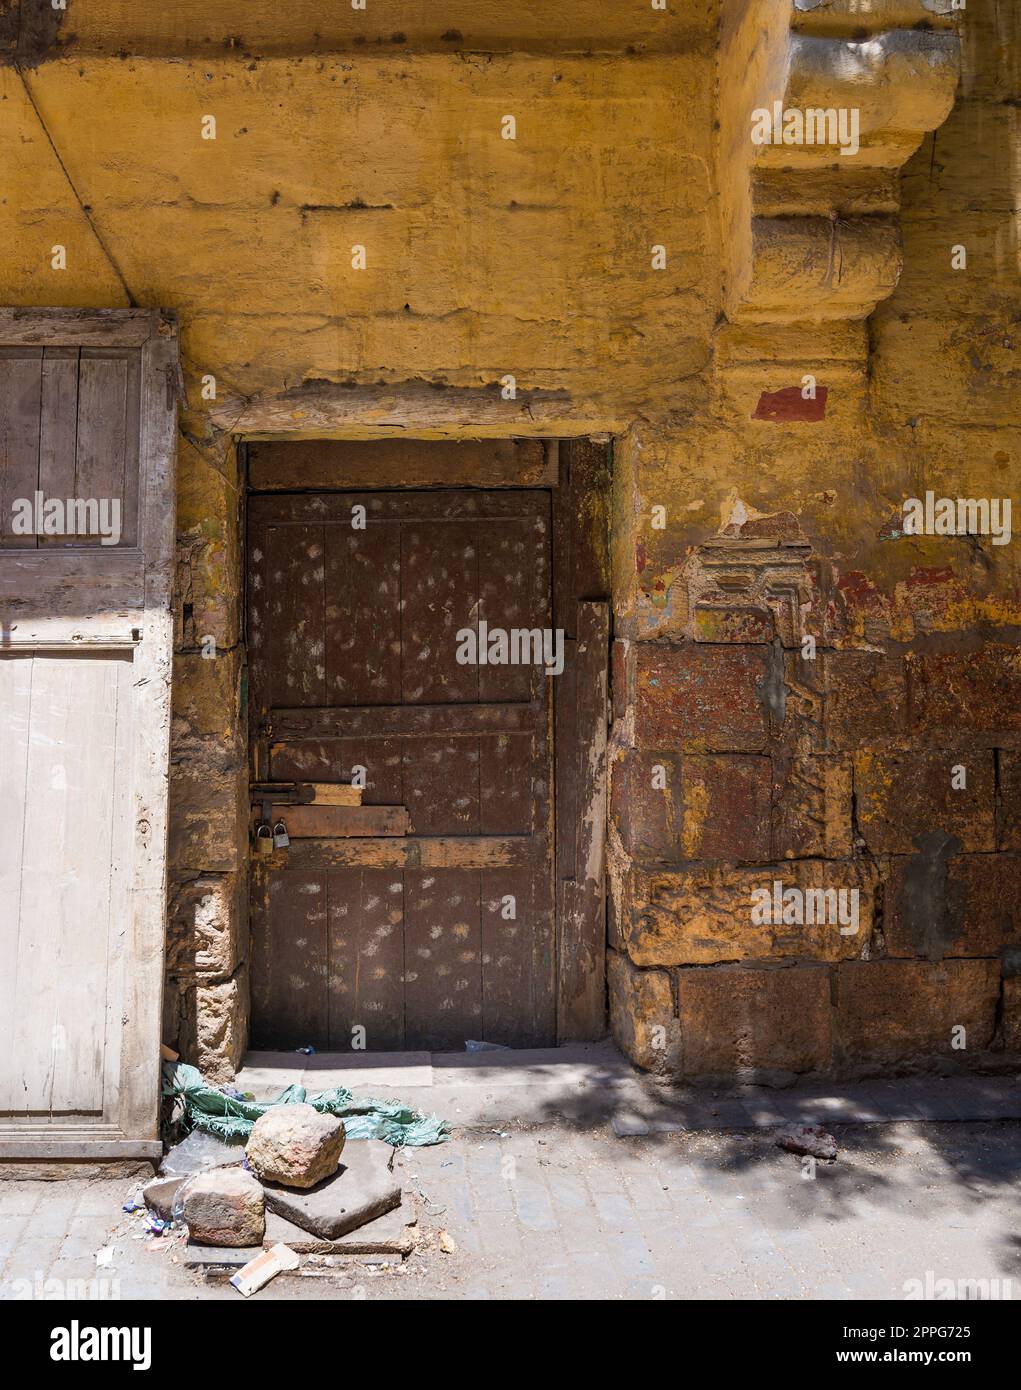 Broken wooden door on orange grunge stone bricks wall in abandoned district Stock Photo